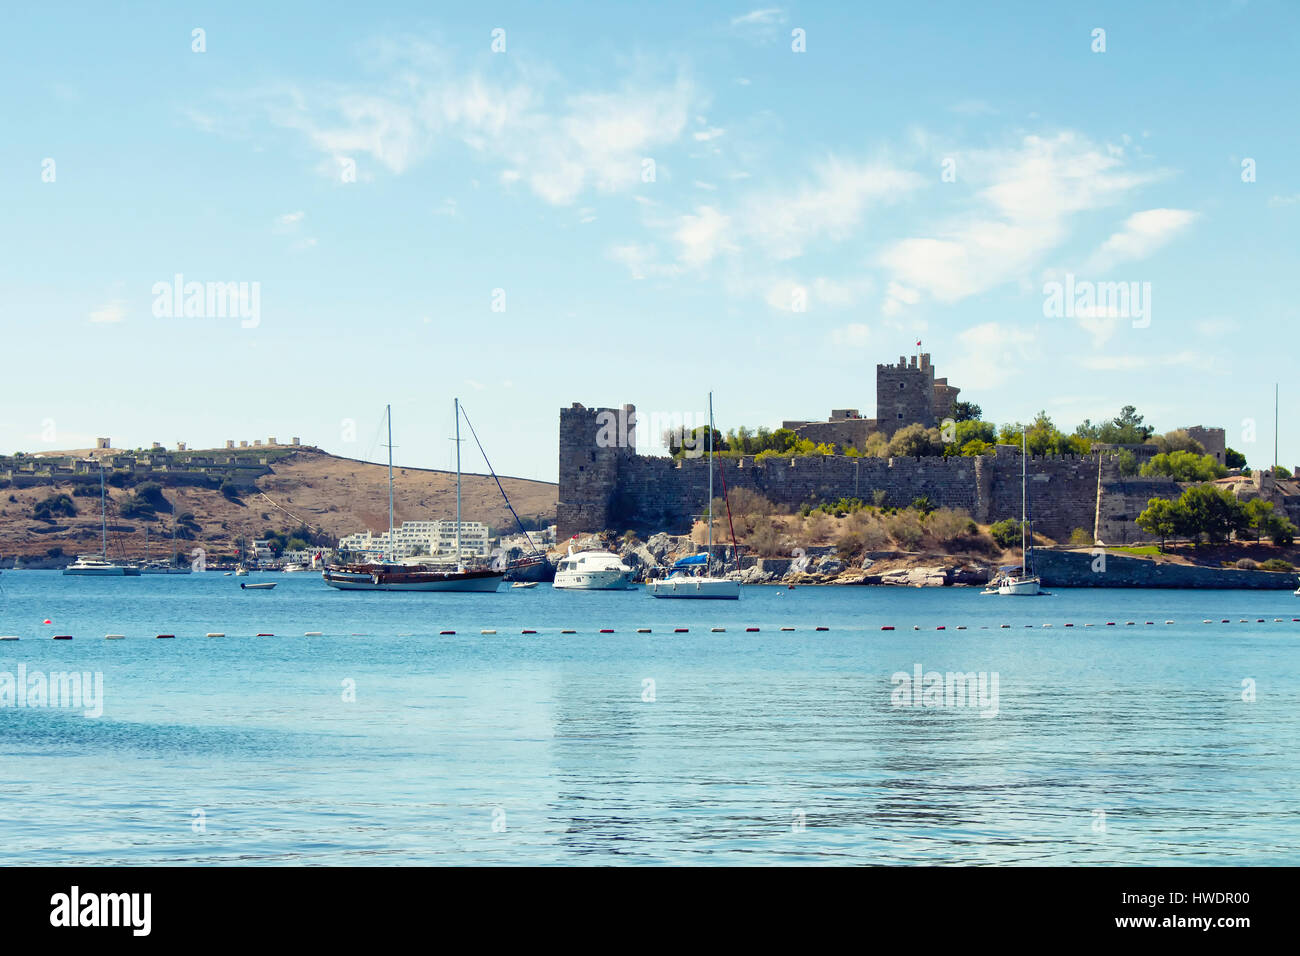 Luxus-Yachten (Segelboote) geparkt auf dem türkisblauen Wasser vor Bodrum Burg. Das Bild zeigt Ägäis und Mittelmeer Kultur der Coastel Lifestyl Stockfoto